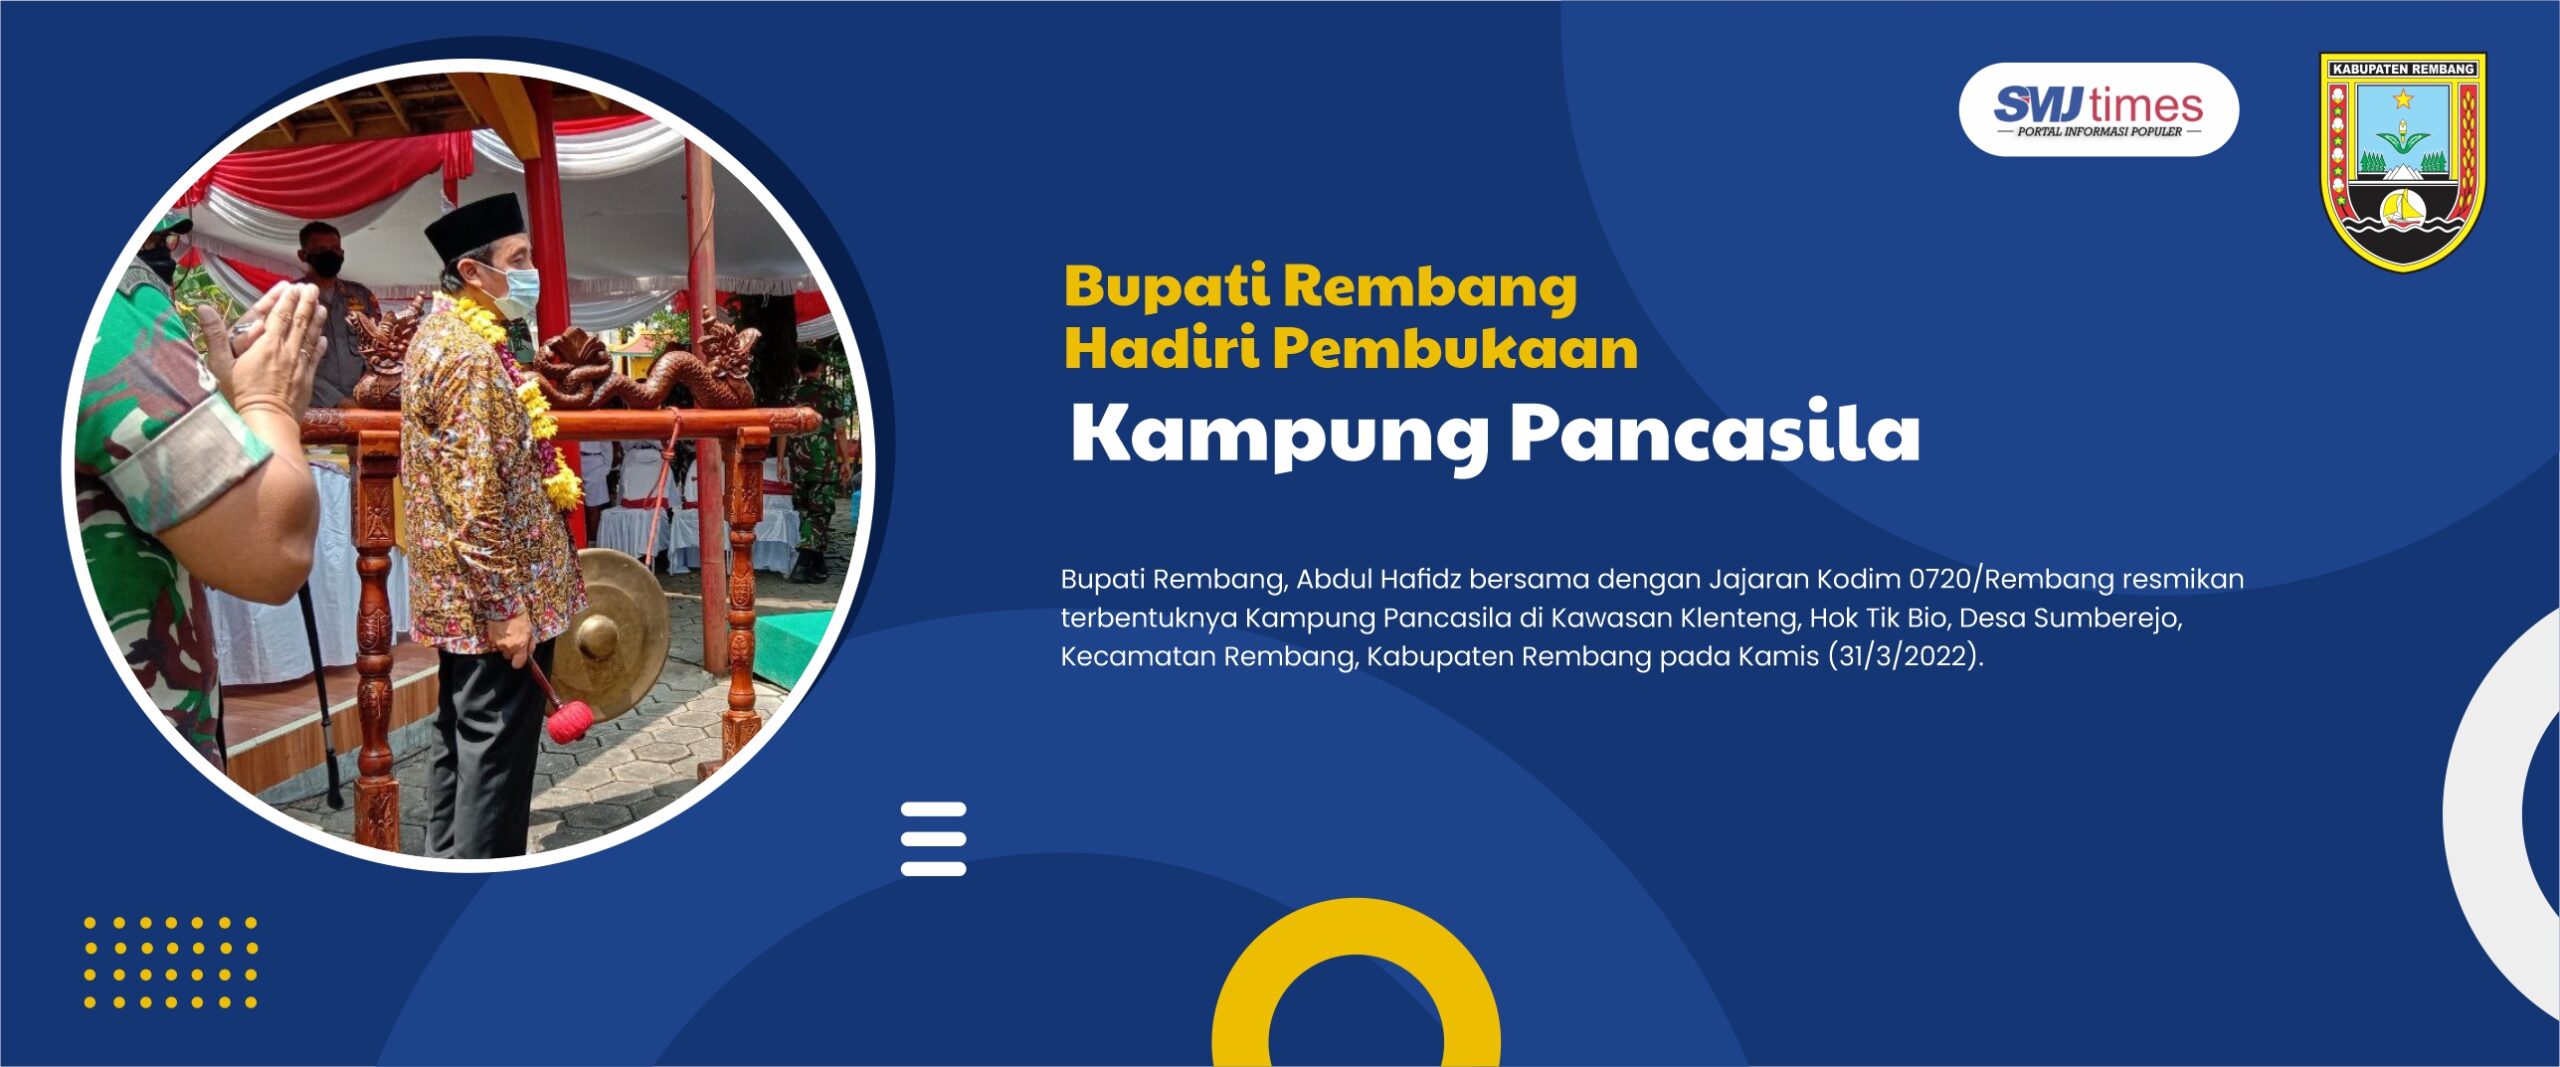 Bupati Rembang Hadiri Pembukaan Kampung Pancasila